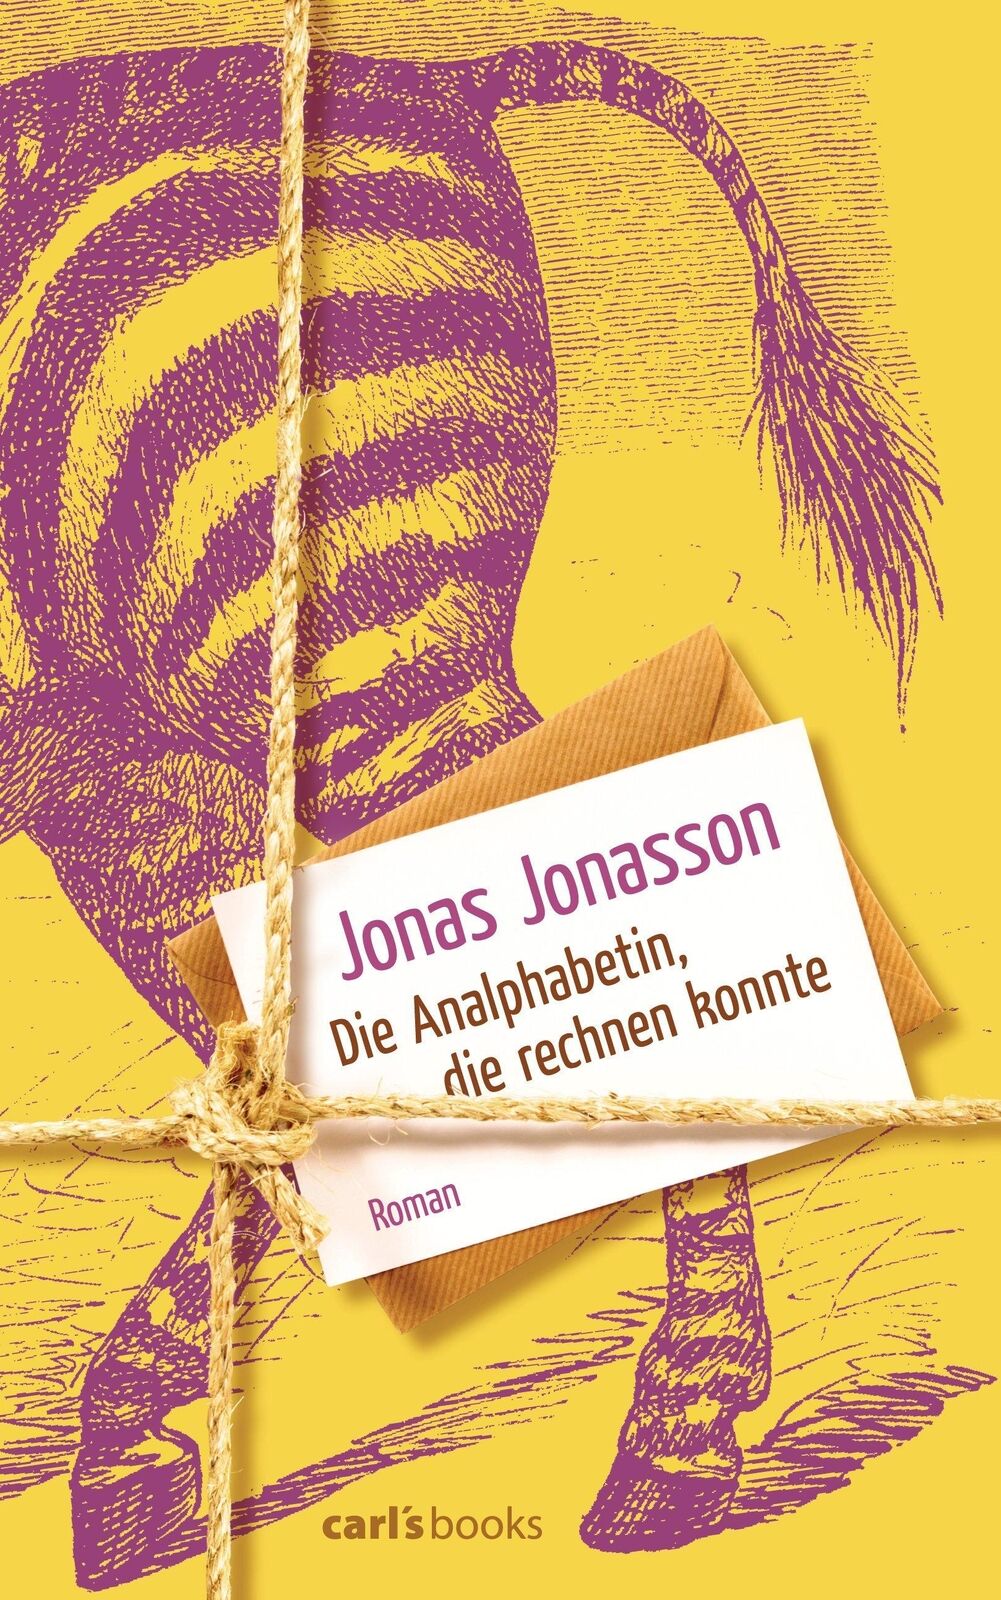 Die Analphabetin, die rechnen konnte Jonas Jonasson Buch 448 S. Deutsch 2013